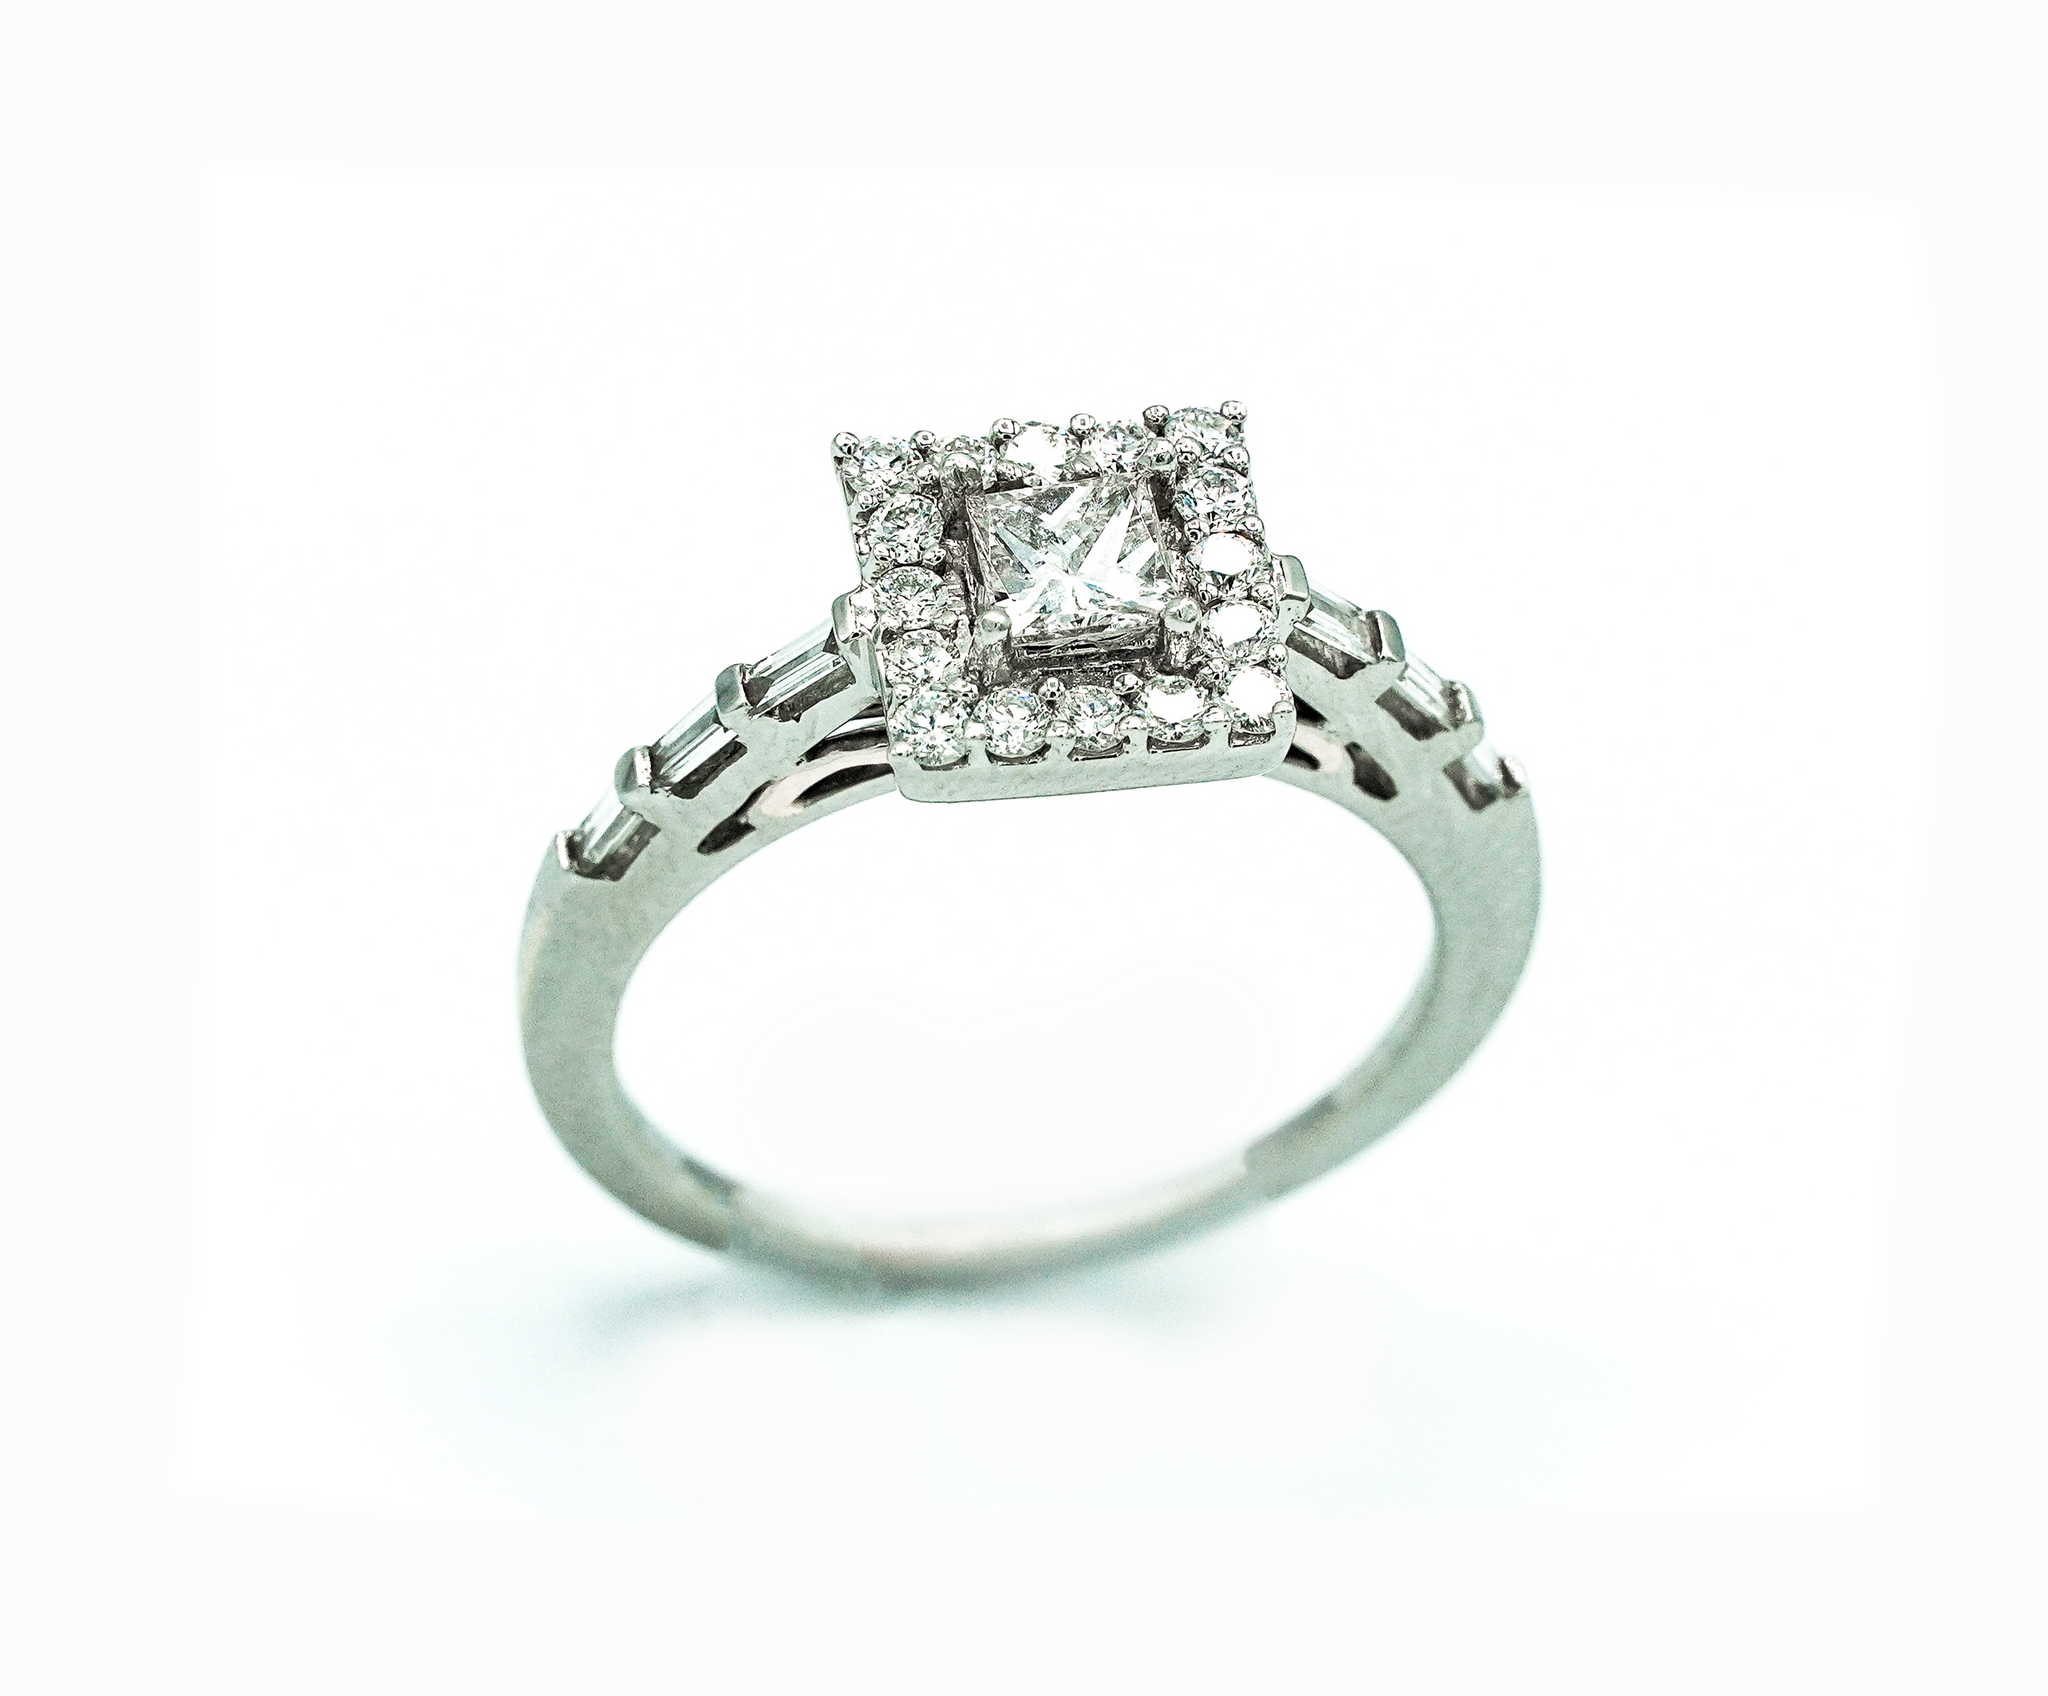 Montalvo Diamonds - Square Modified Brilliant Cut Ring in 14kt White Gold